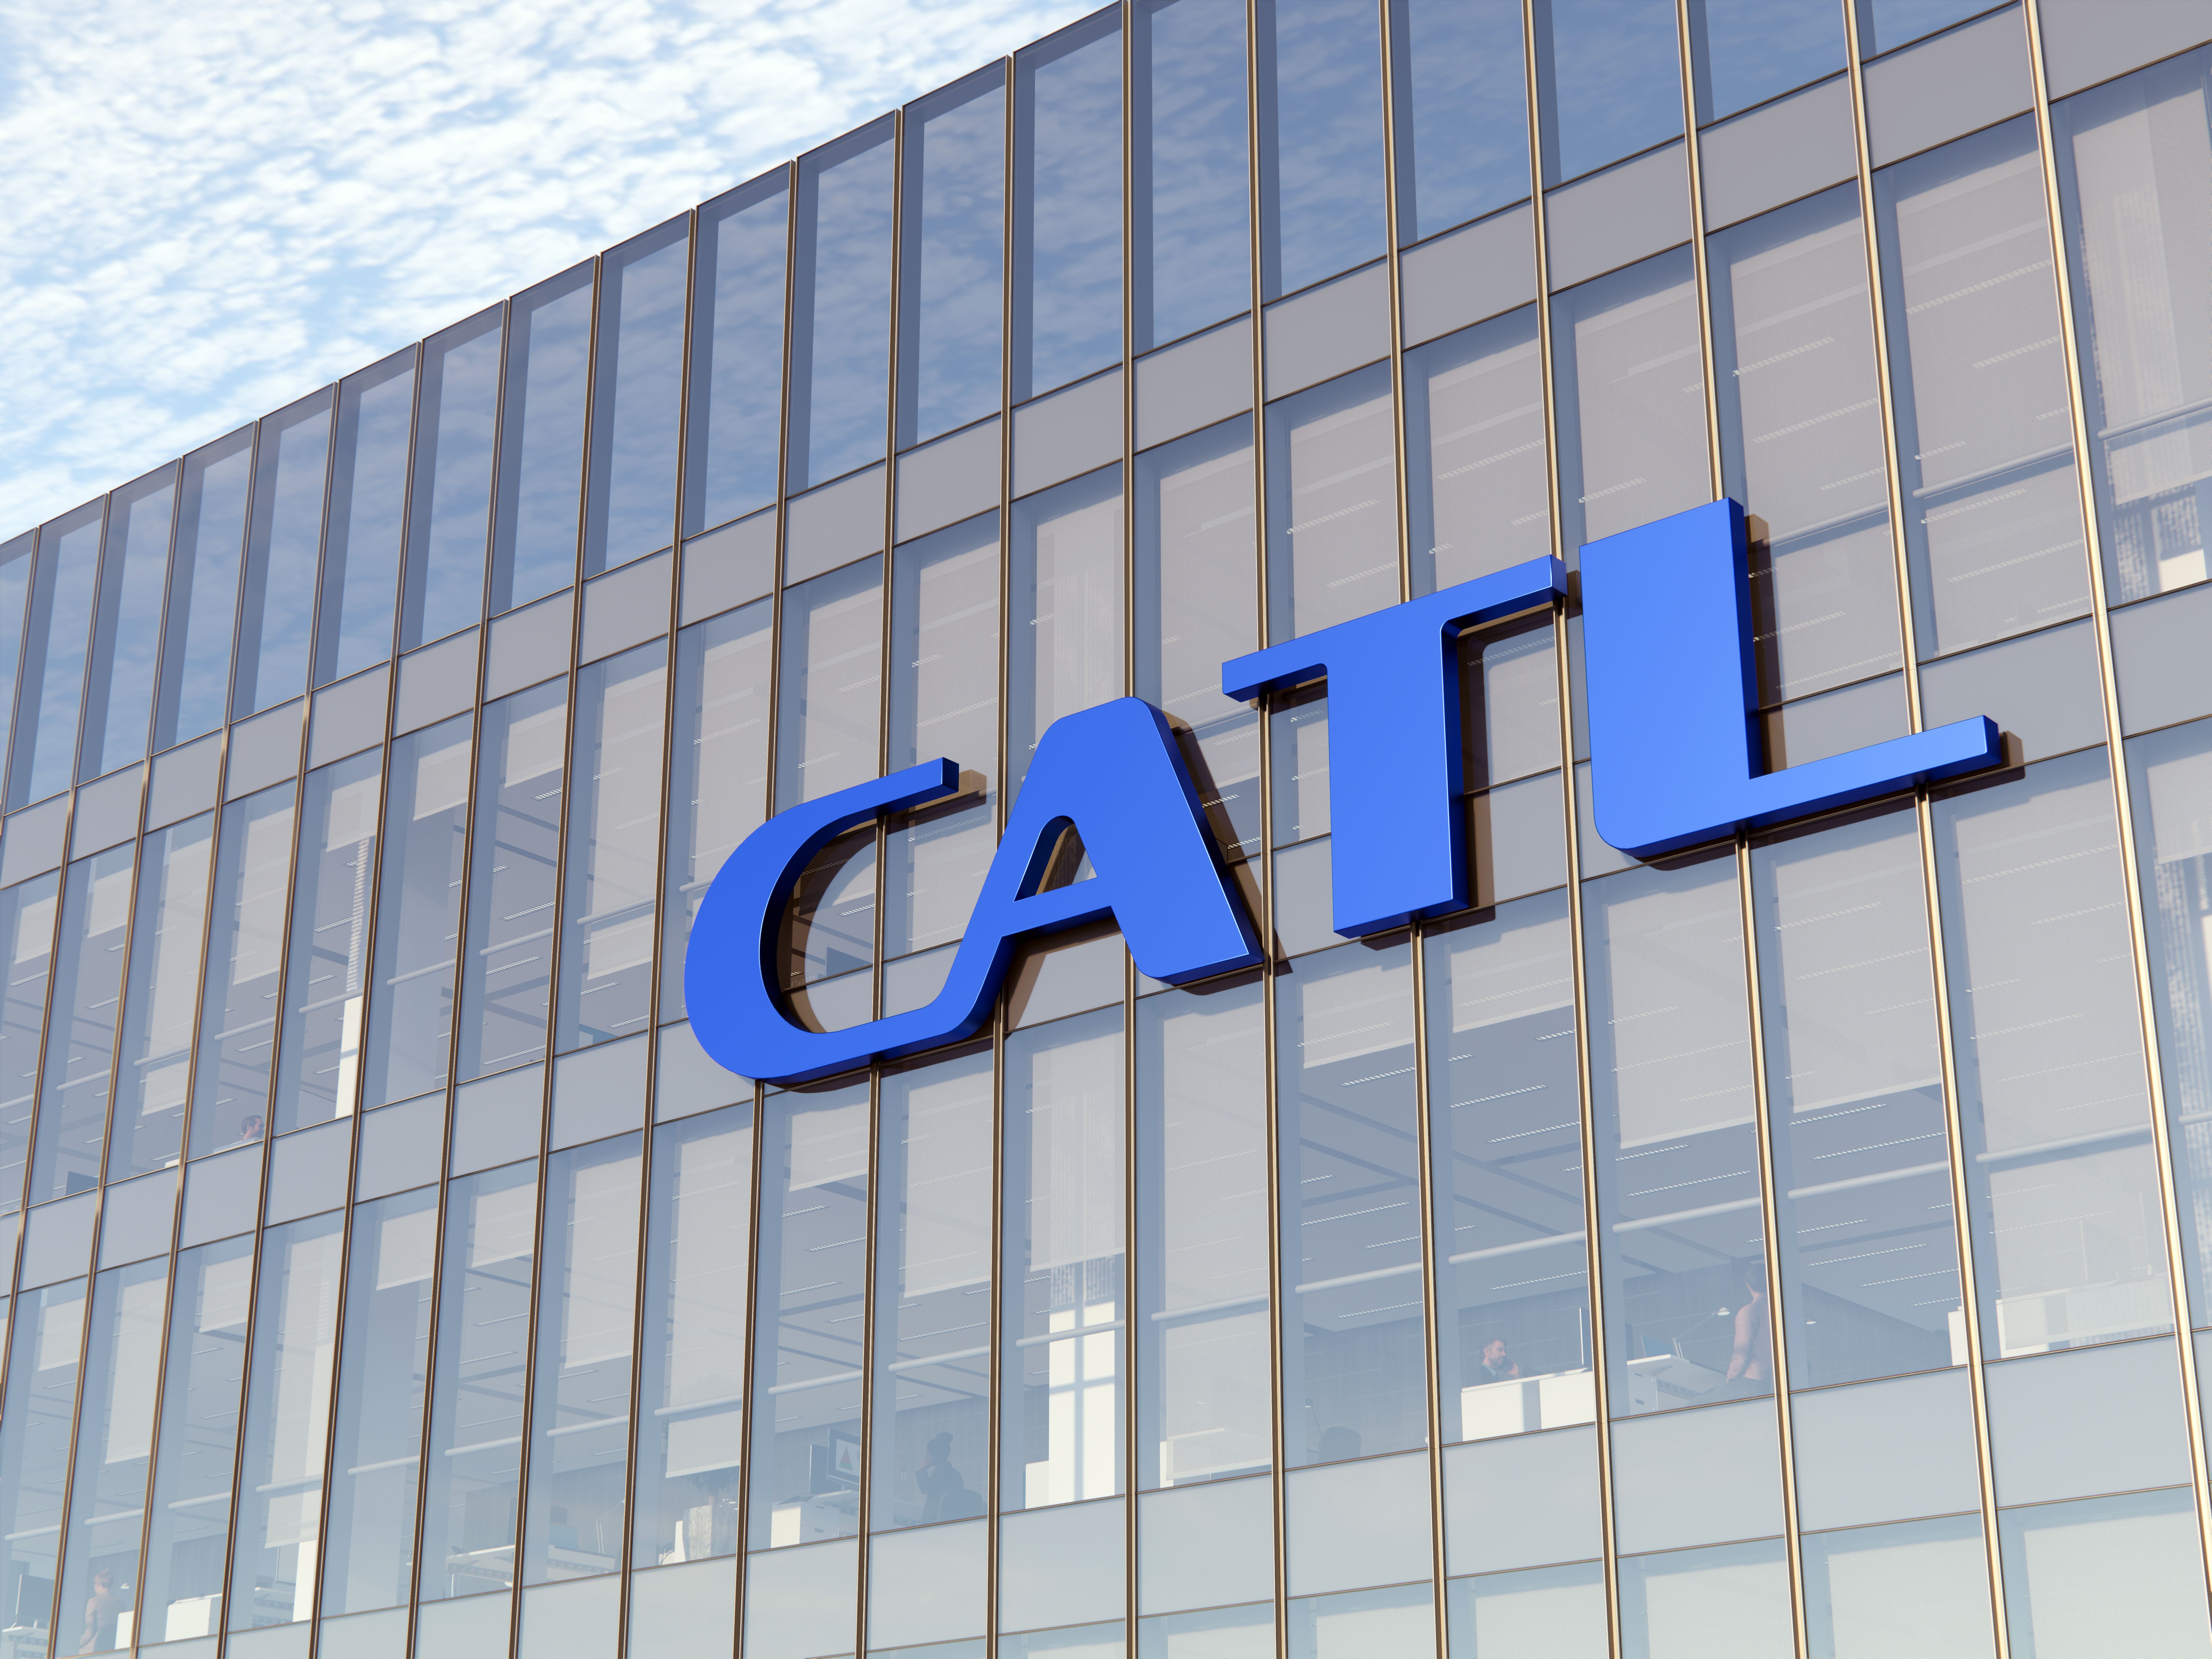 Blaues Catl-Logo an der Fassade eines Bürogebäudes.